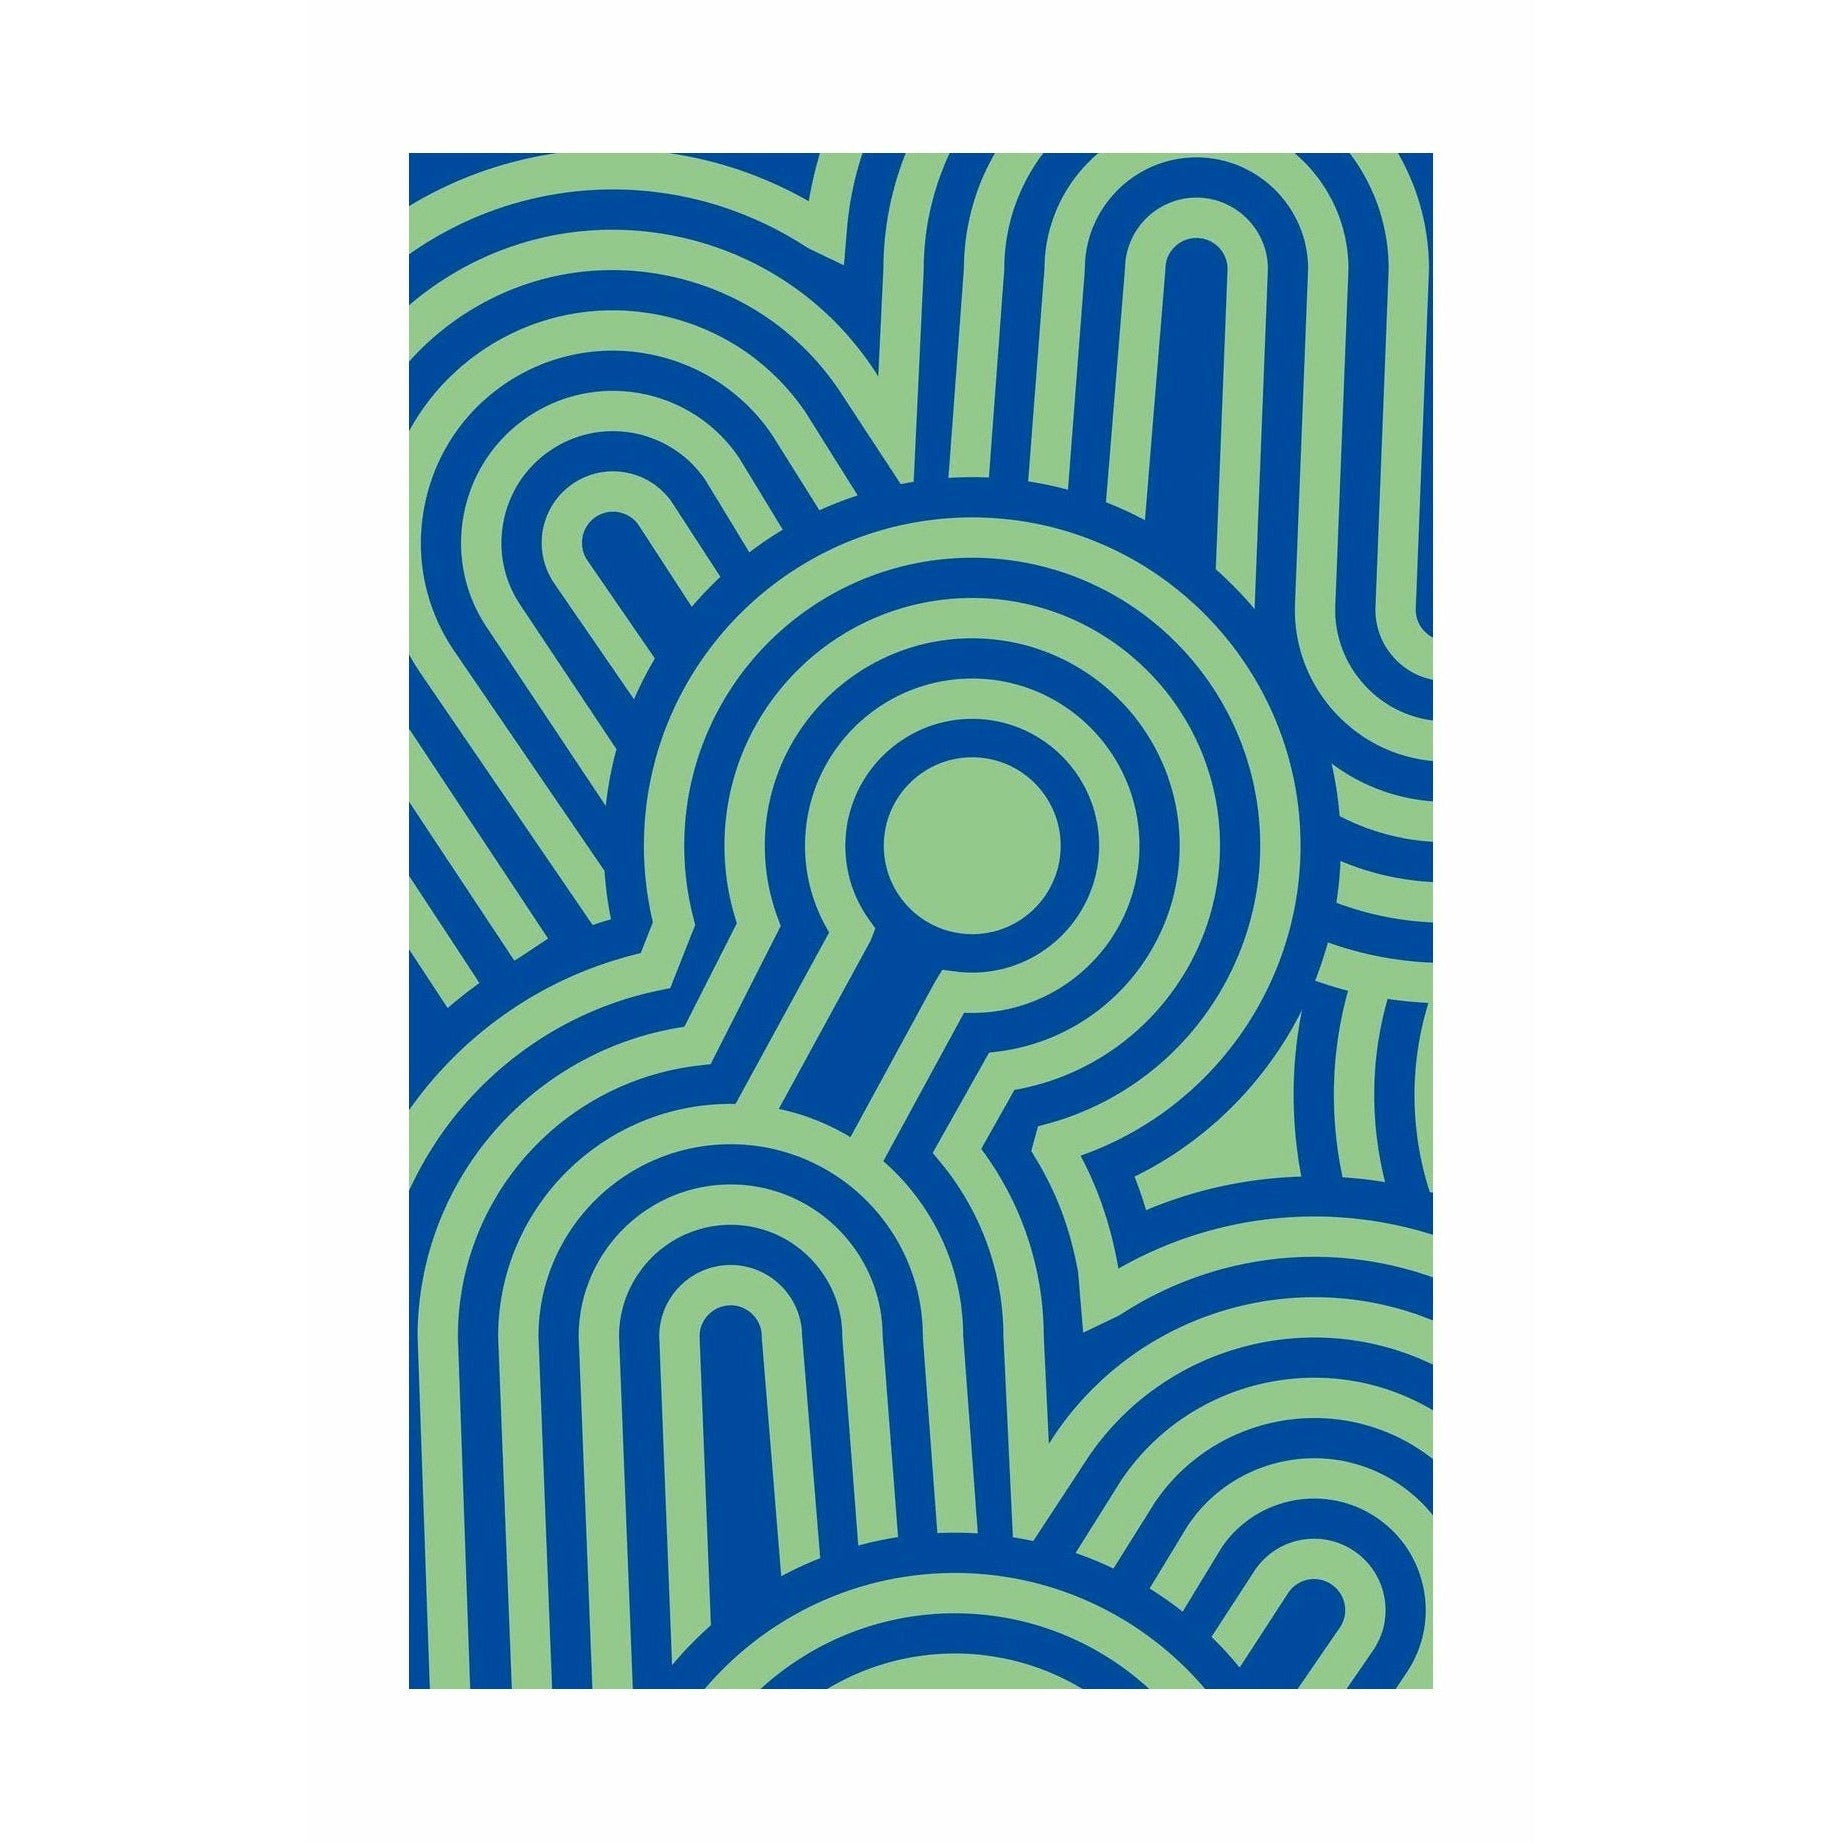 Qeeboo stillema 6 koberec 200x300 cm, zelená/modrá